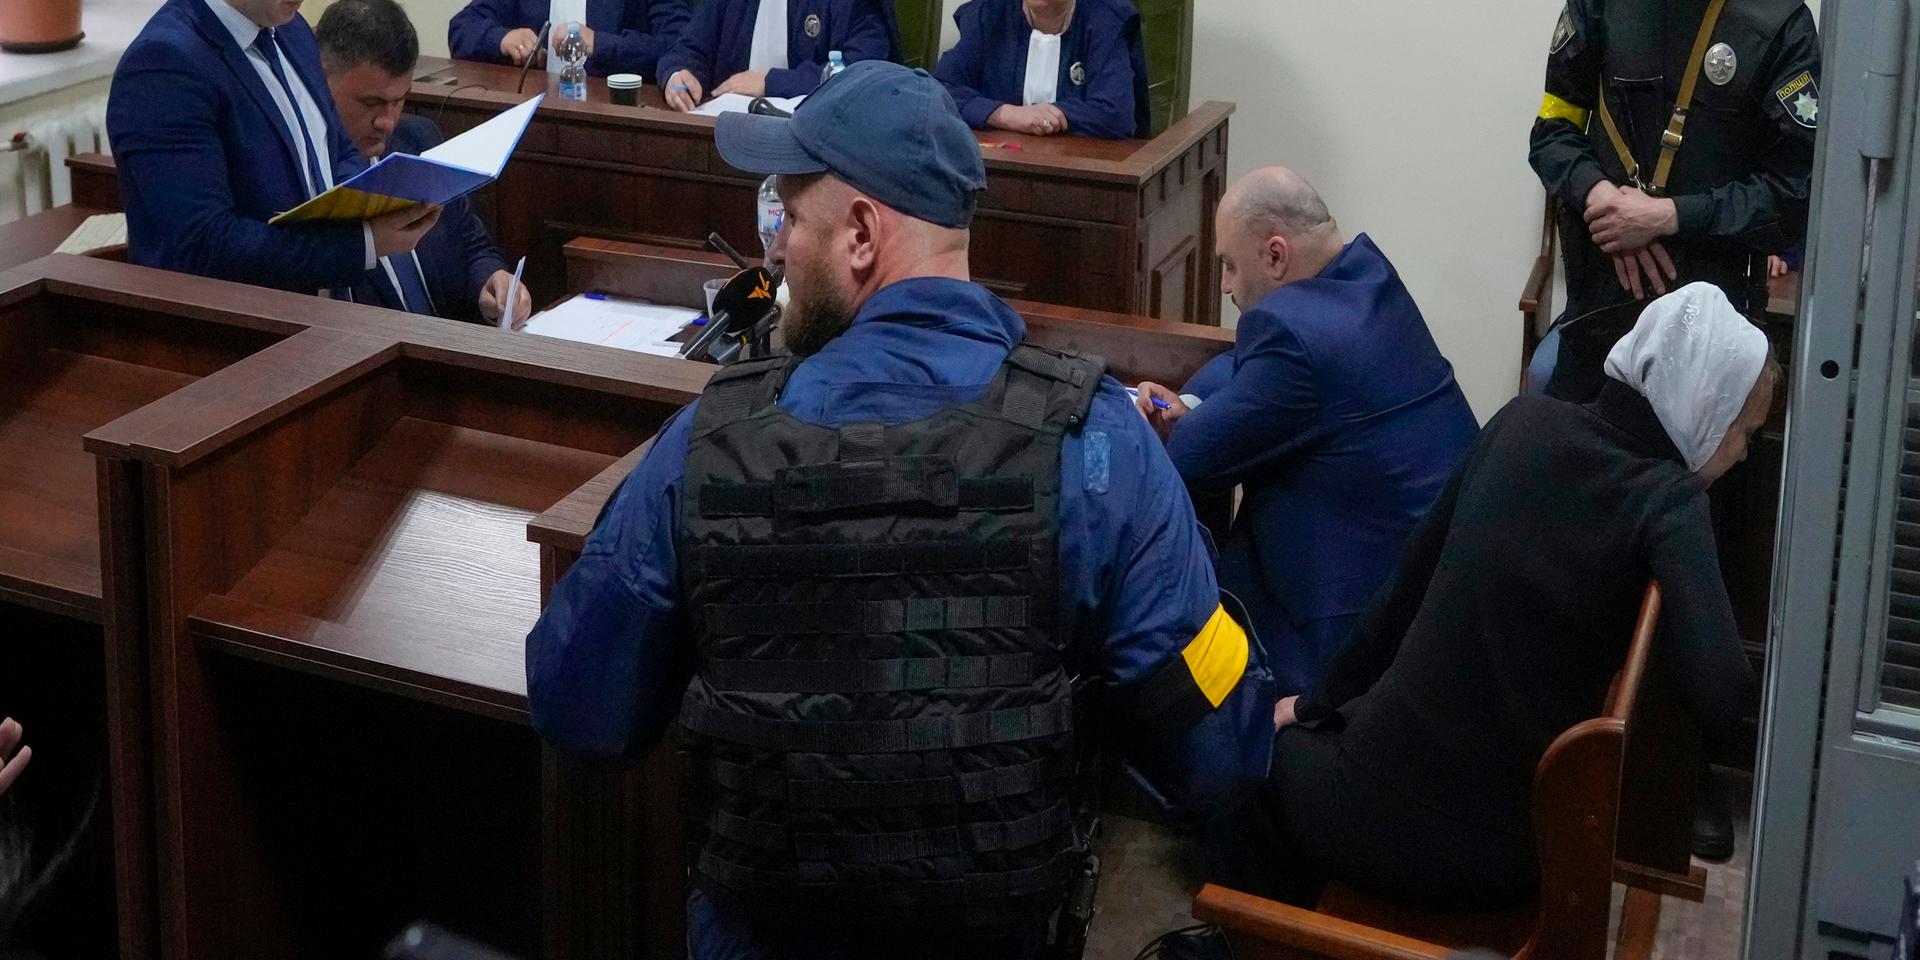 Domstolssalen där rättegången mot den ryske soldaten hållits. Bild från veckan.